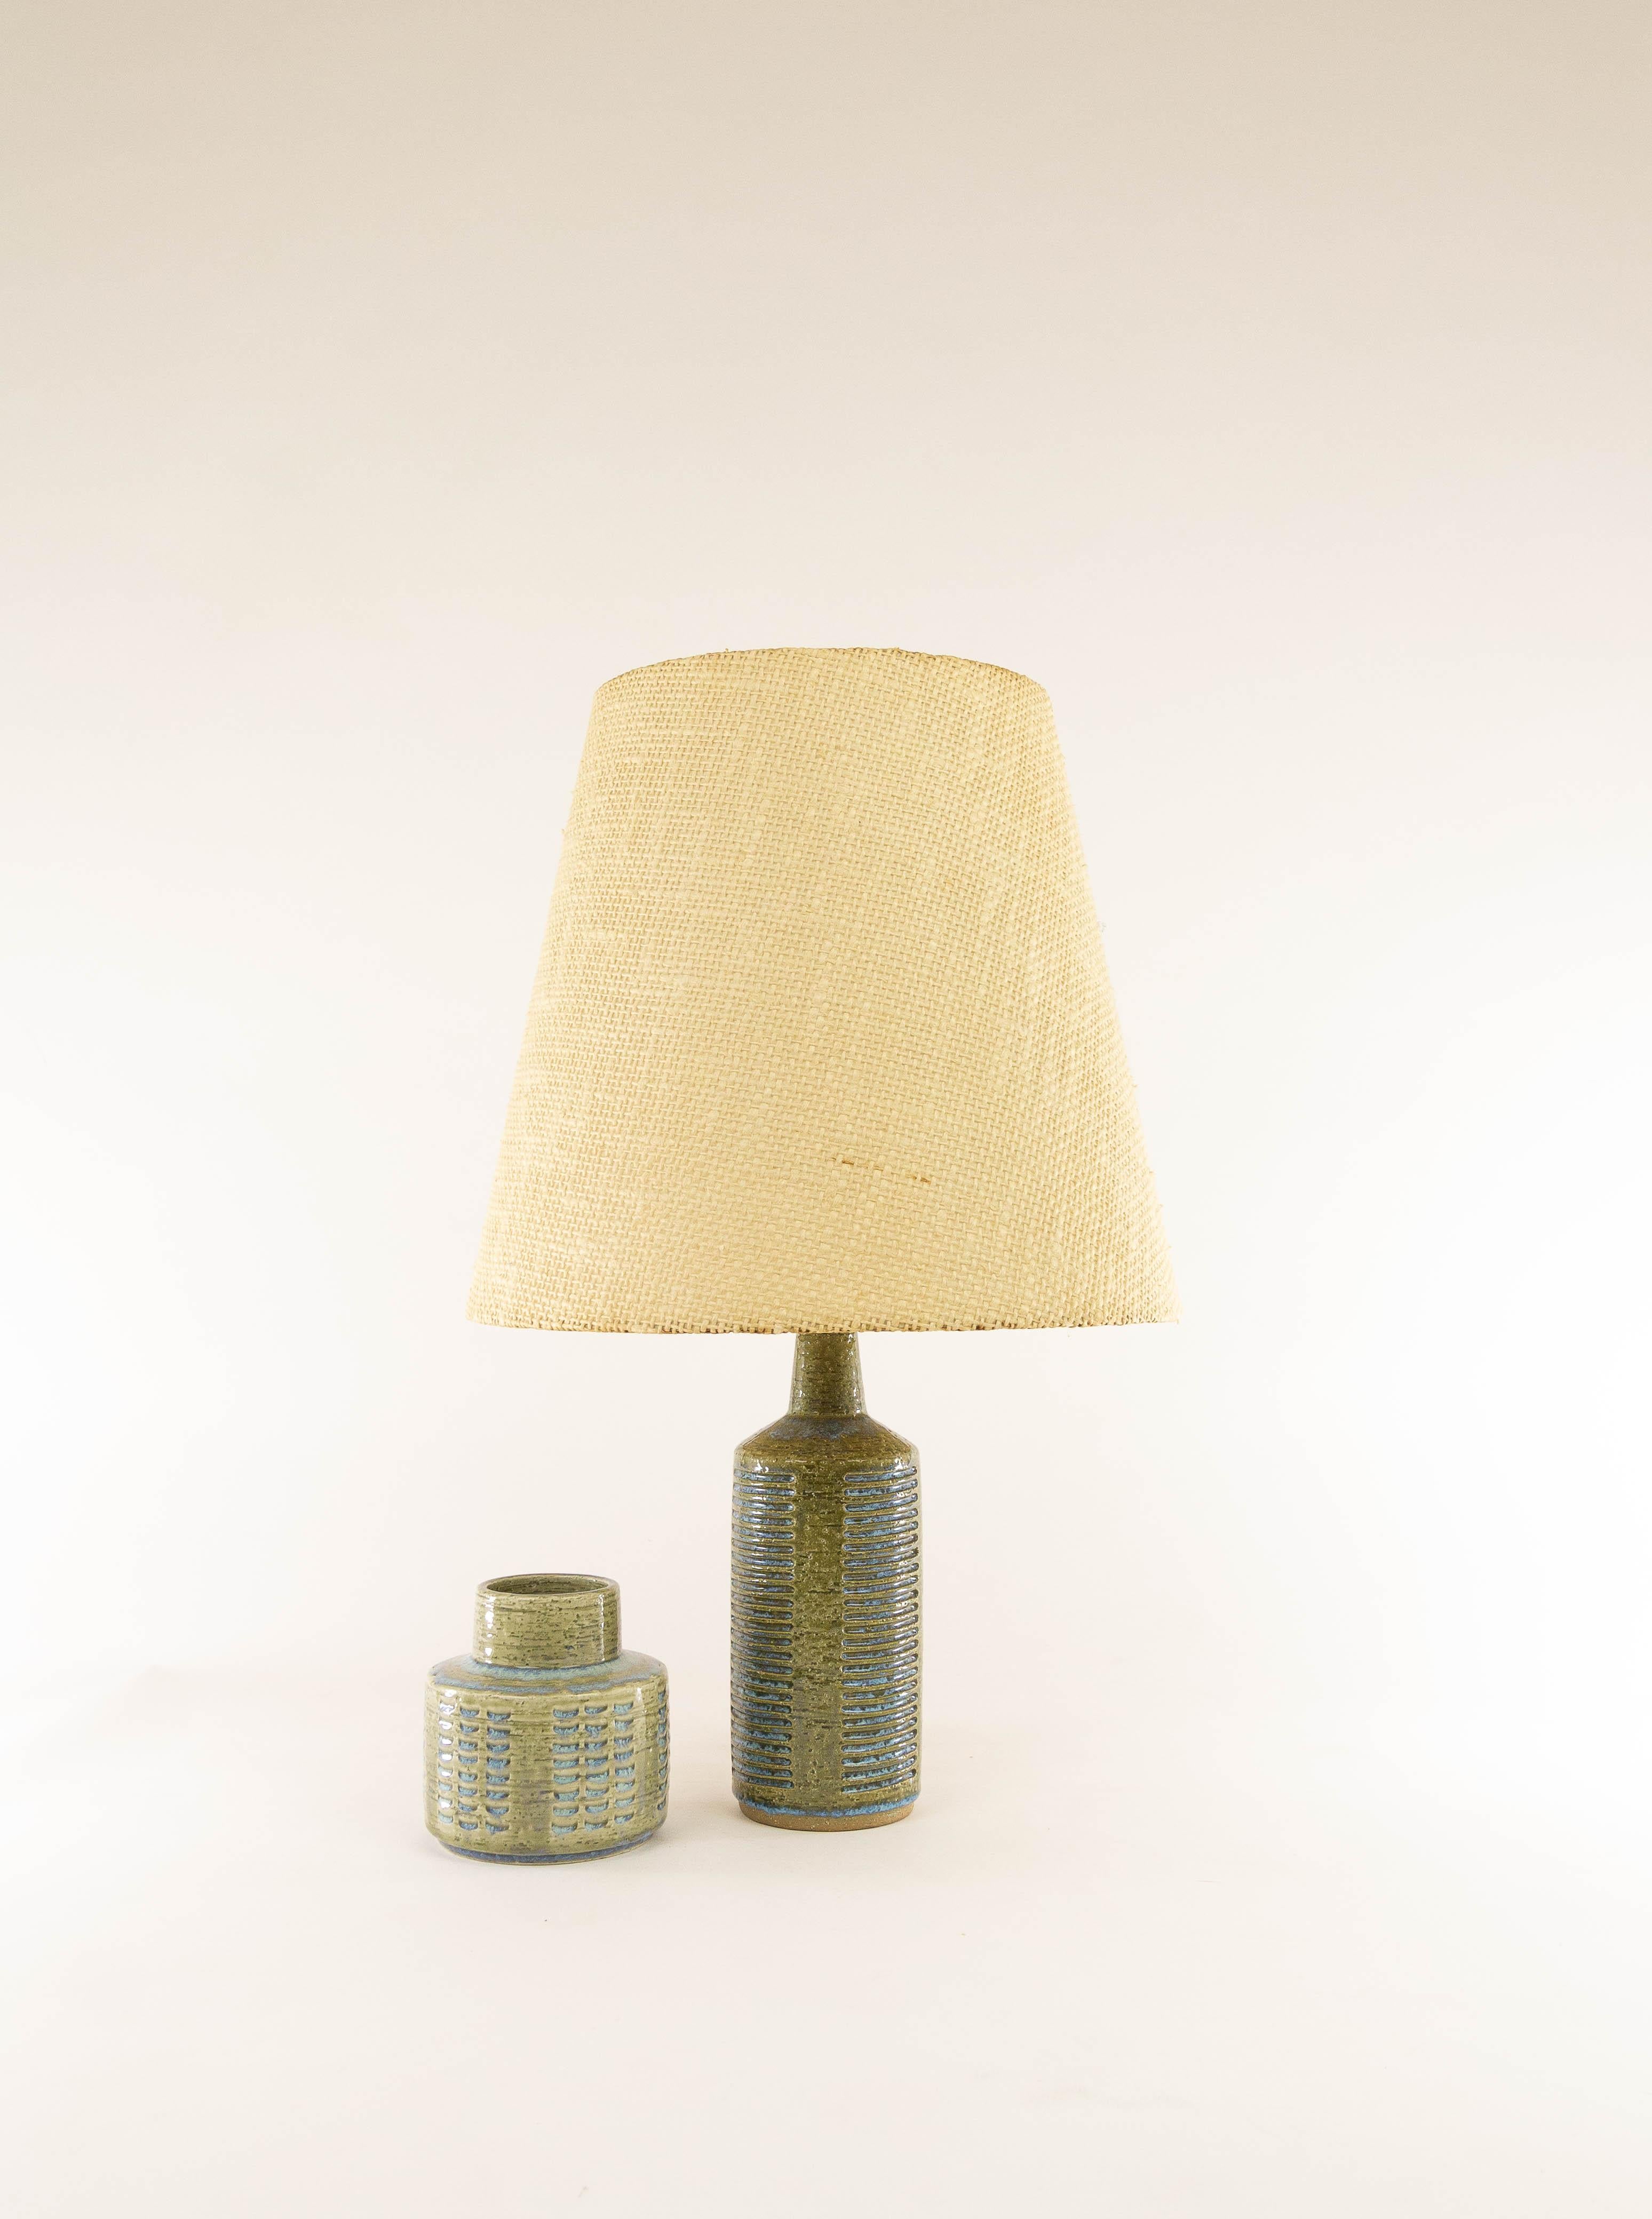 Mid-20th Century Olive Green & Light Blue Table Lamp Model DL/30 by Per Linnemann-Schmidt, 1960s